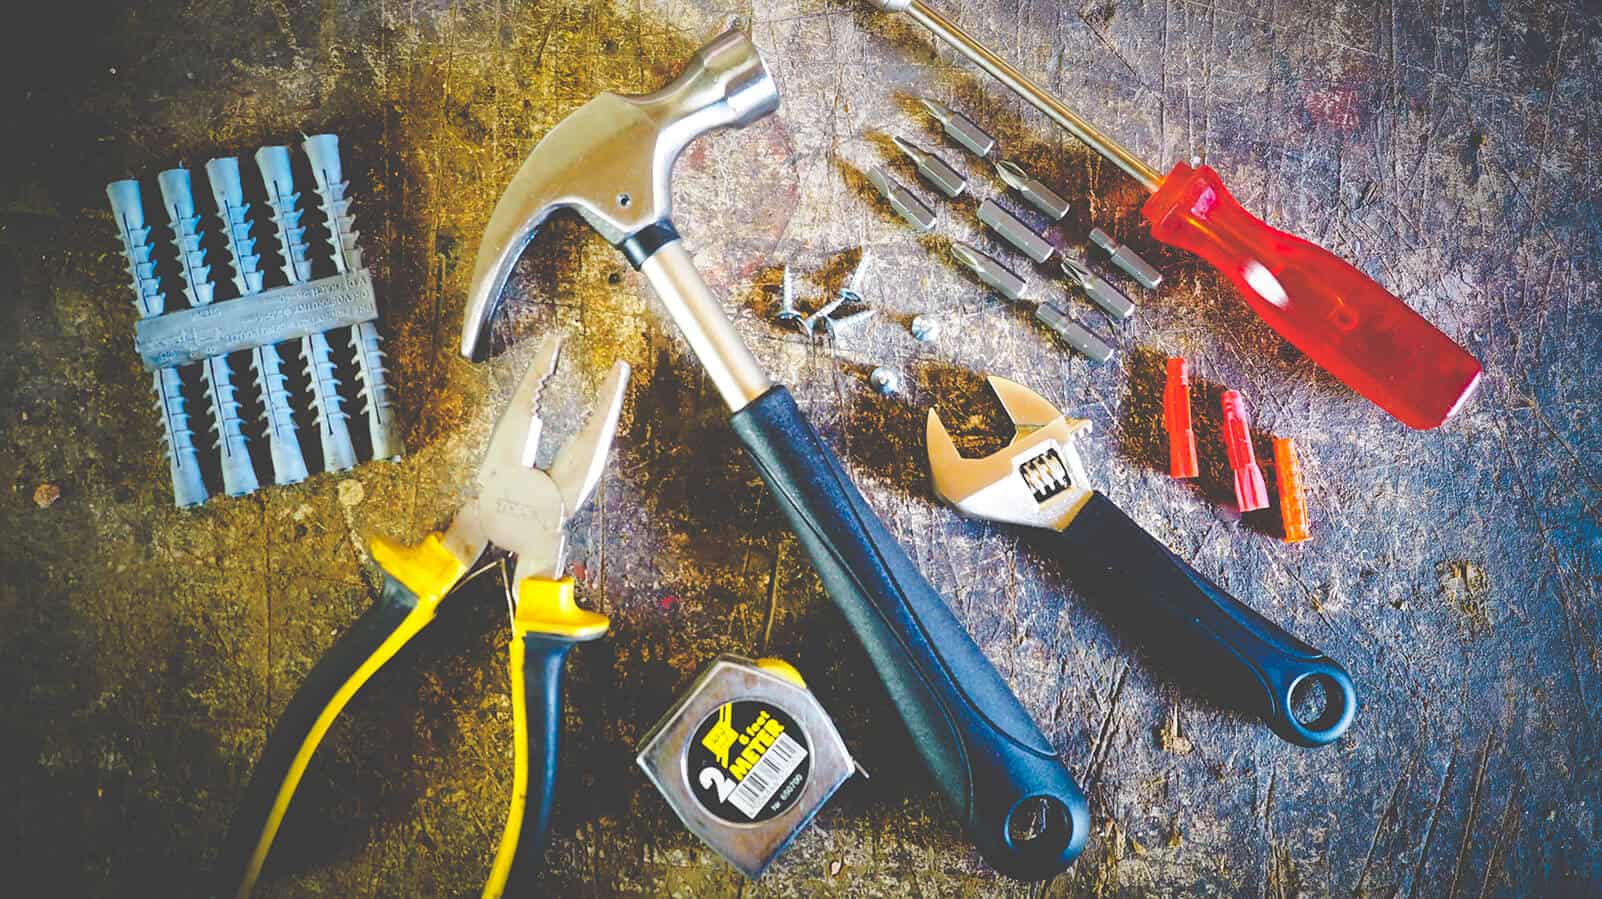 Tools to fix your garage door yourself